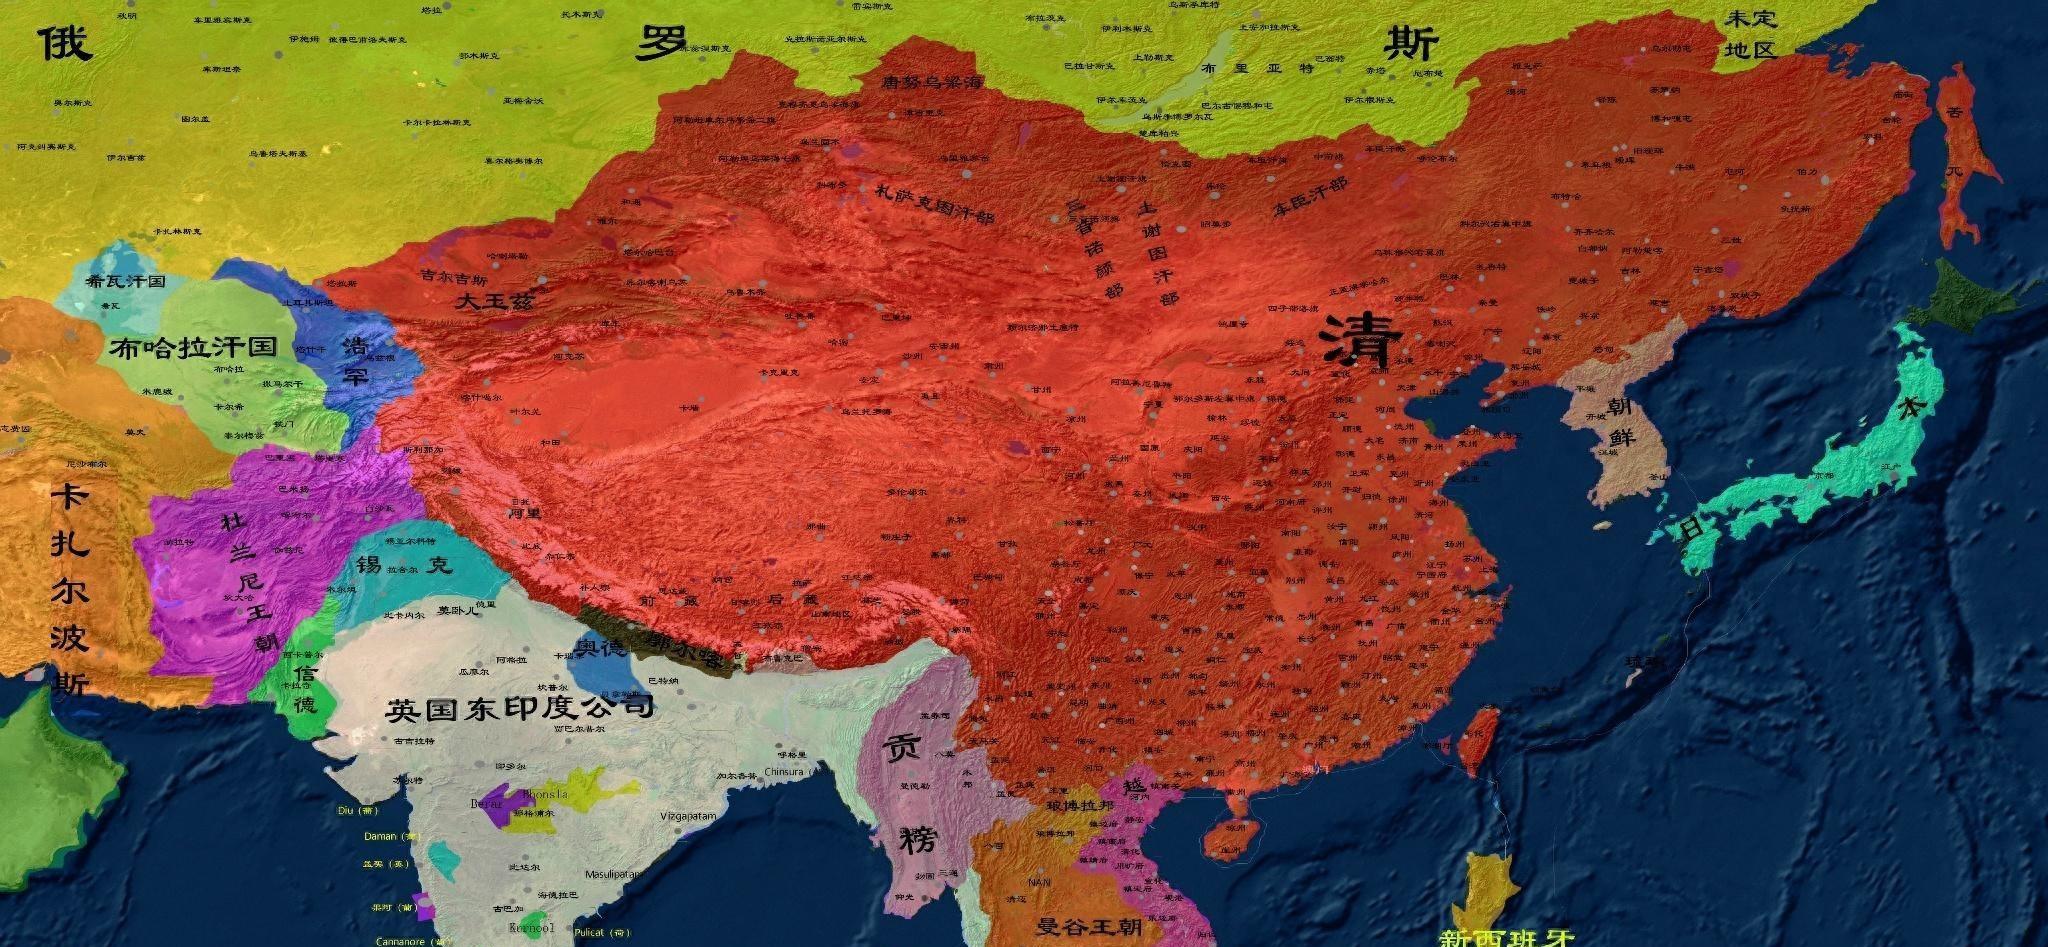 清朝为何能保住1100万领土,尽管丧失主权和大量土地?